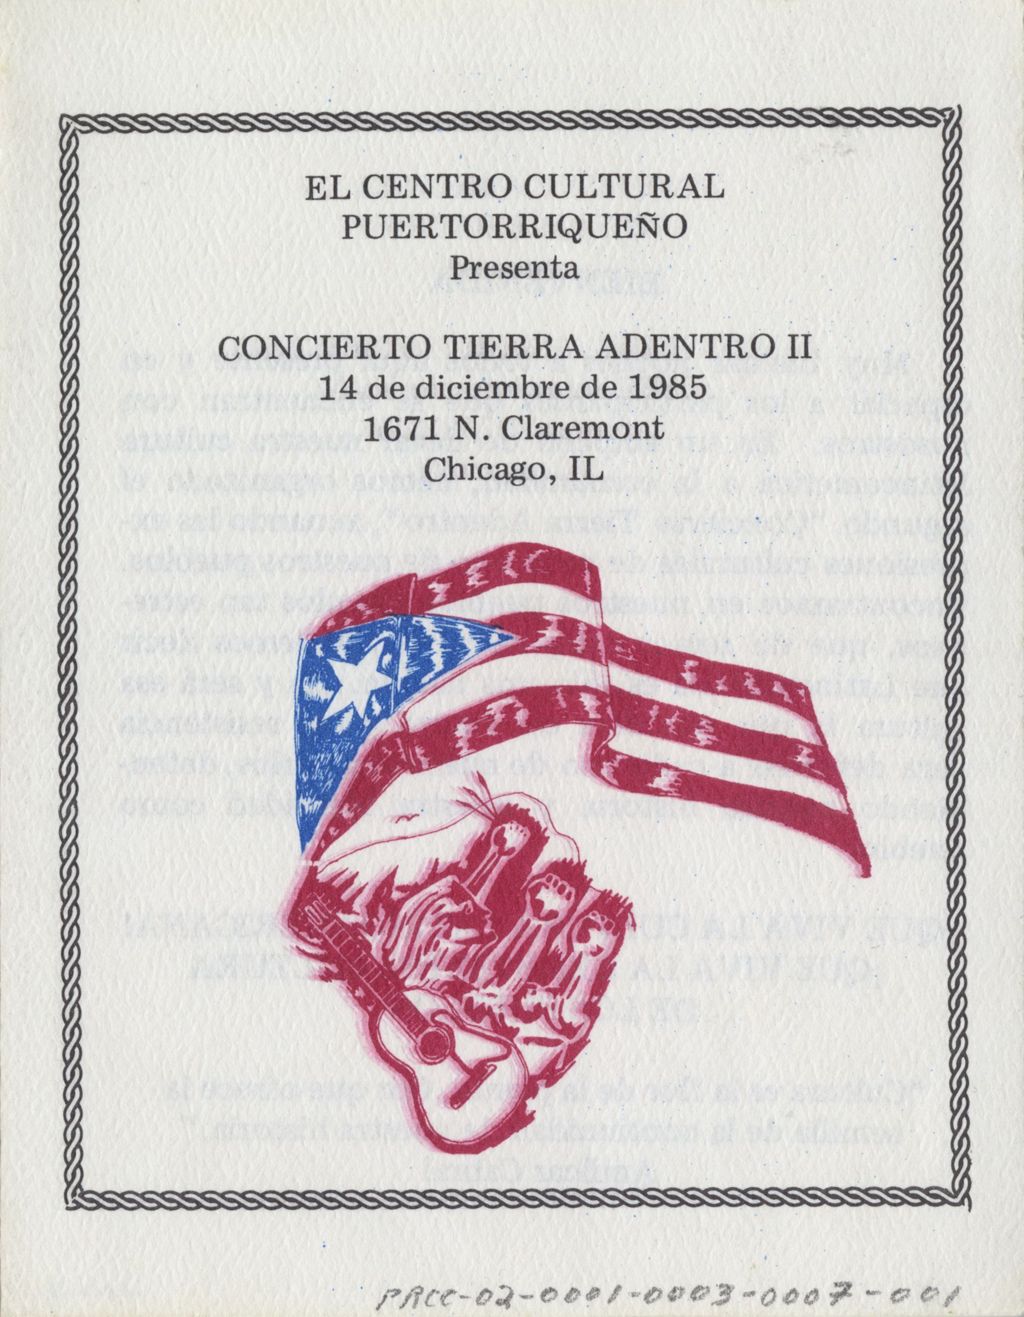 Miniature of Concierto Tierra Adentro II